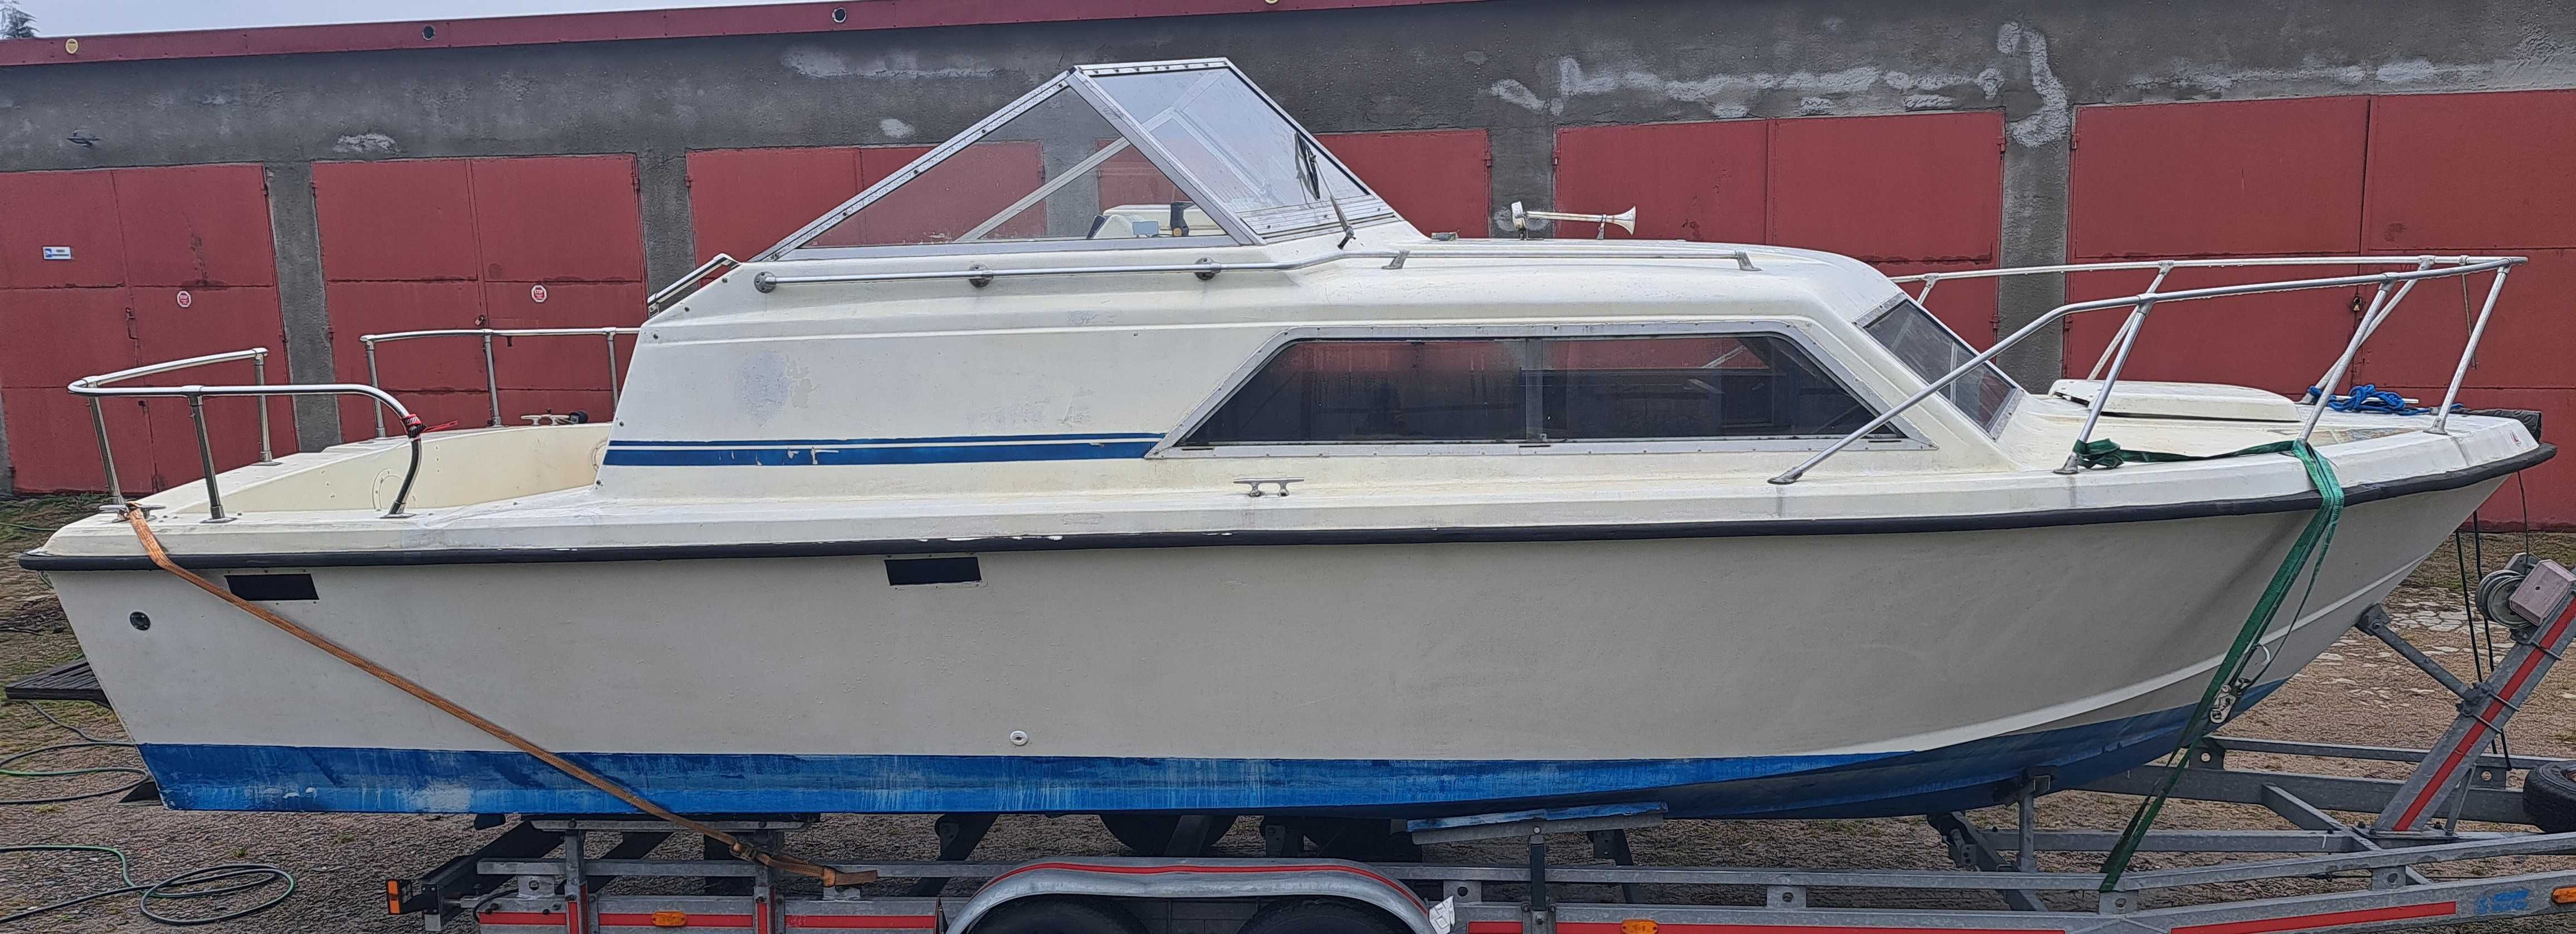 Jacht motorowy CHRIS CRAFT DIESEL mercedes motorówka houseboat 8x3m